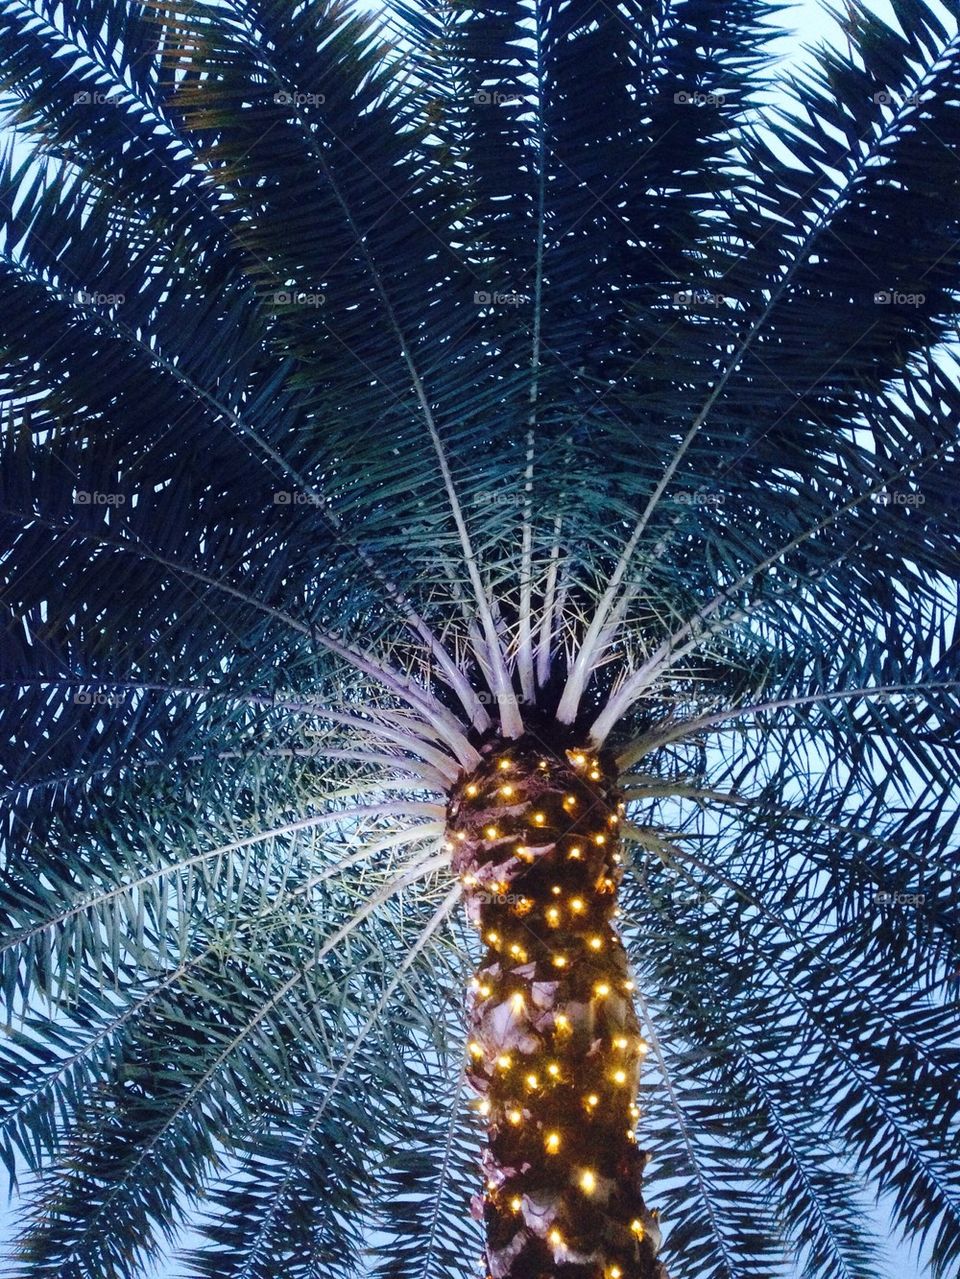 Christmas palm tree